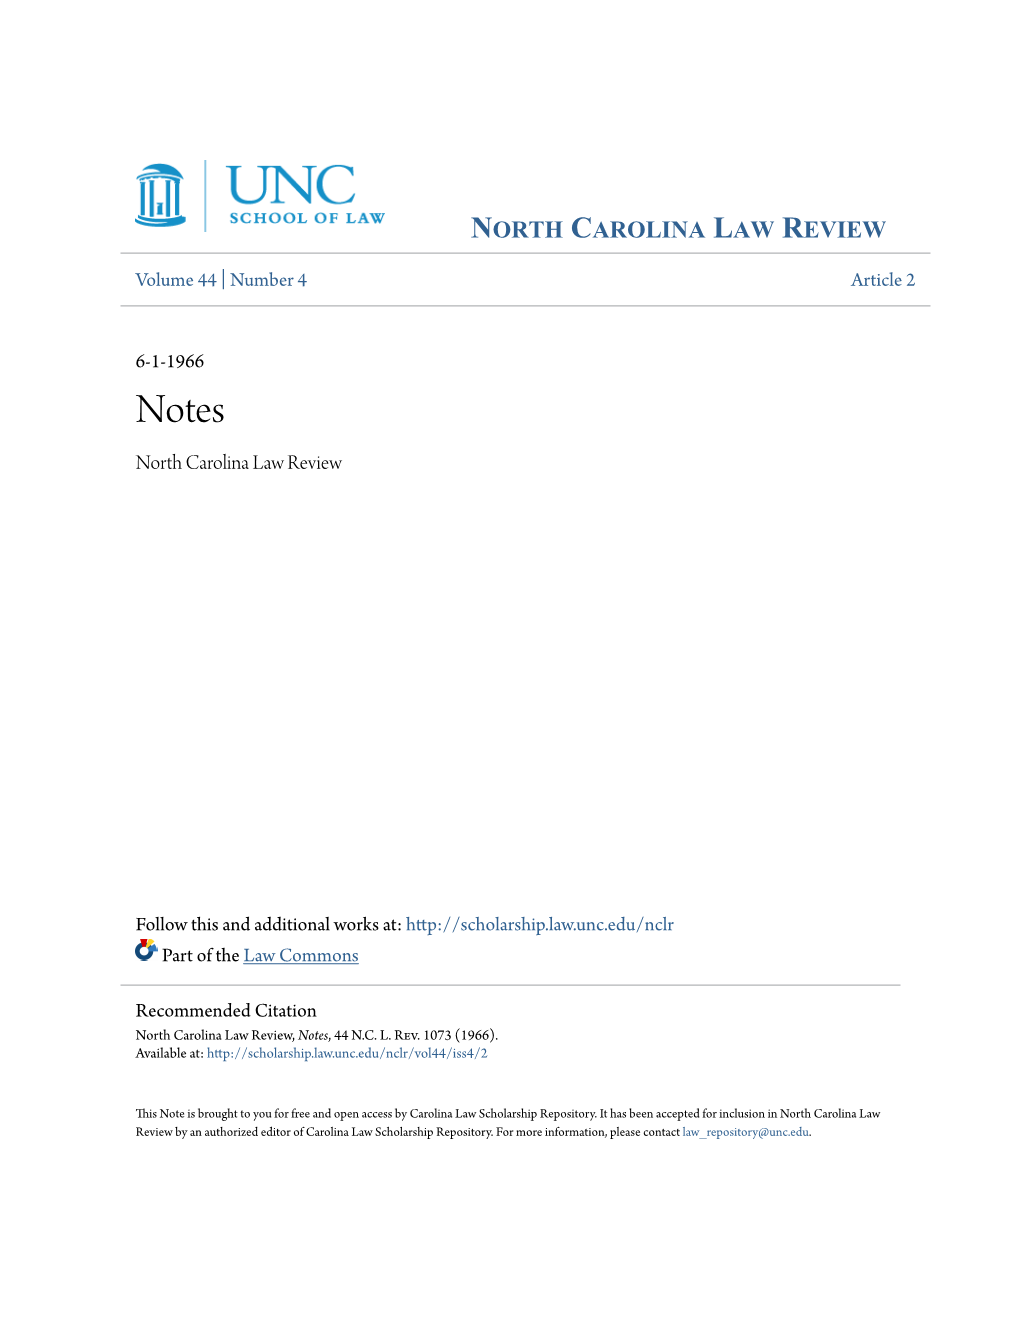 North Carolina Law Review